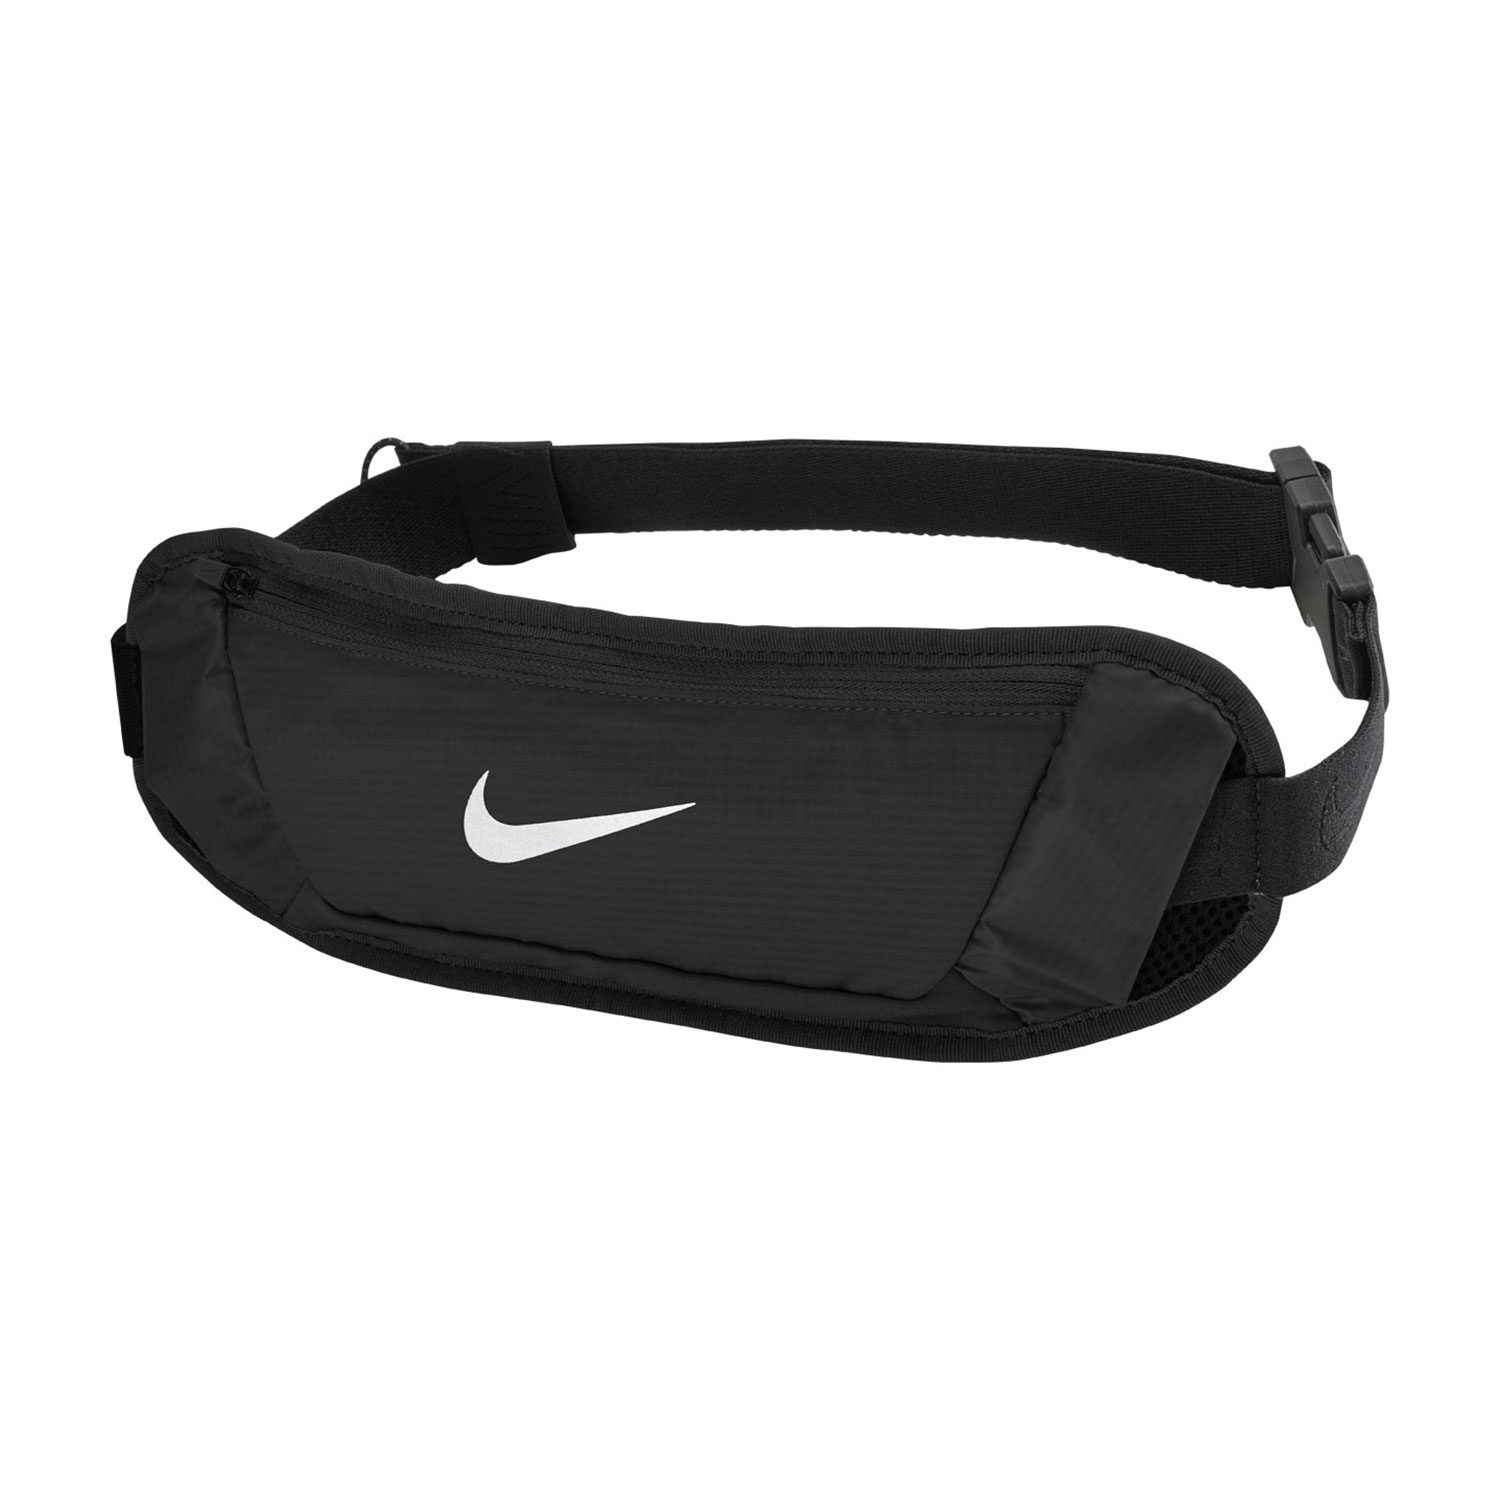 Nike Challenger 2.0 Large Running Waistpack - Black/White